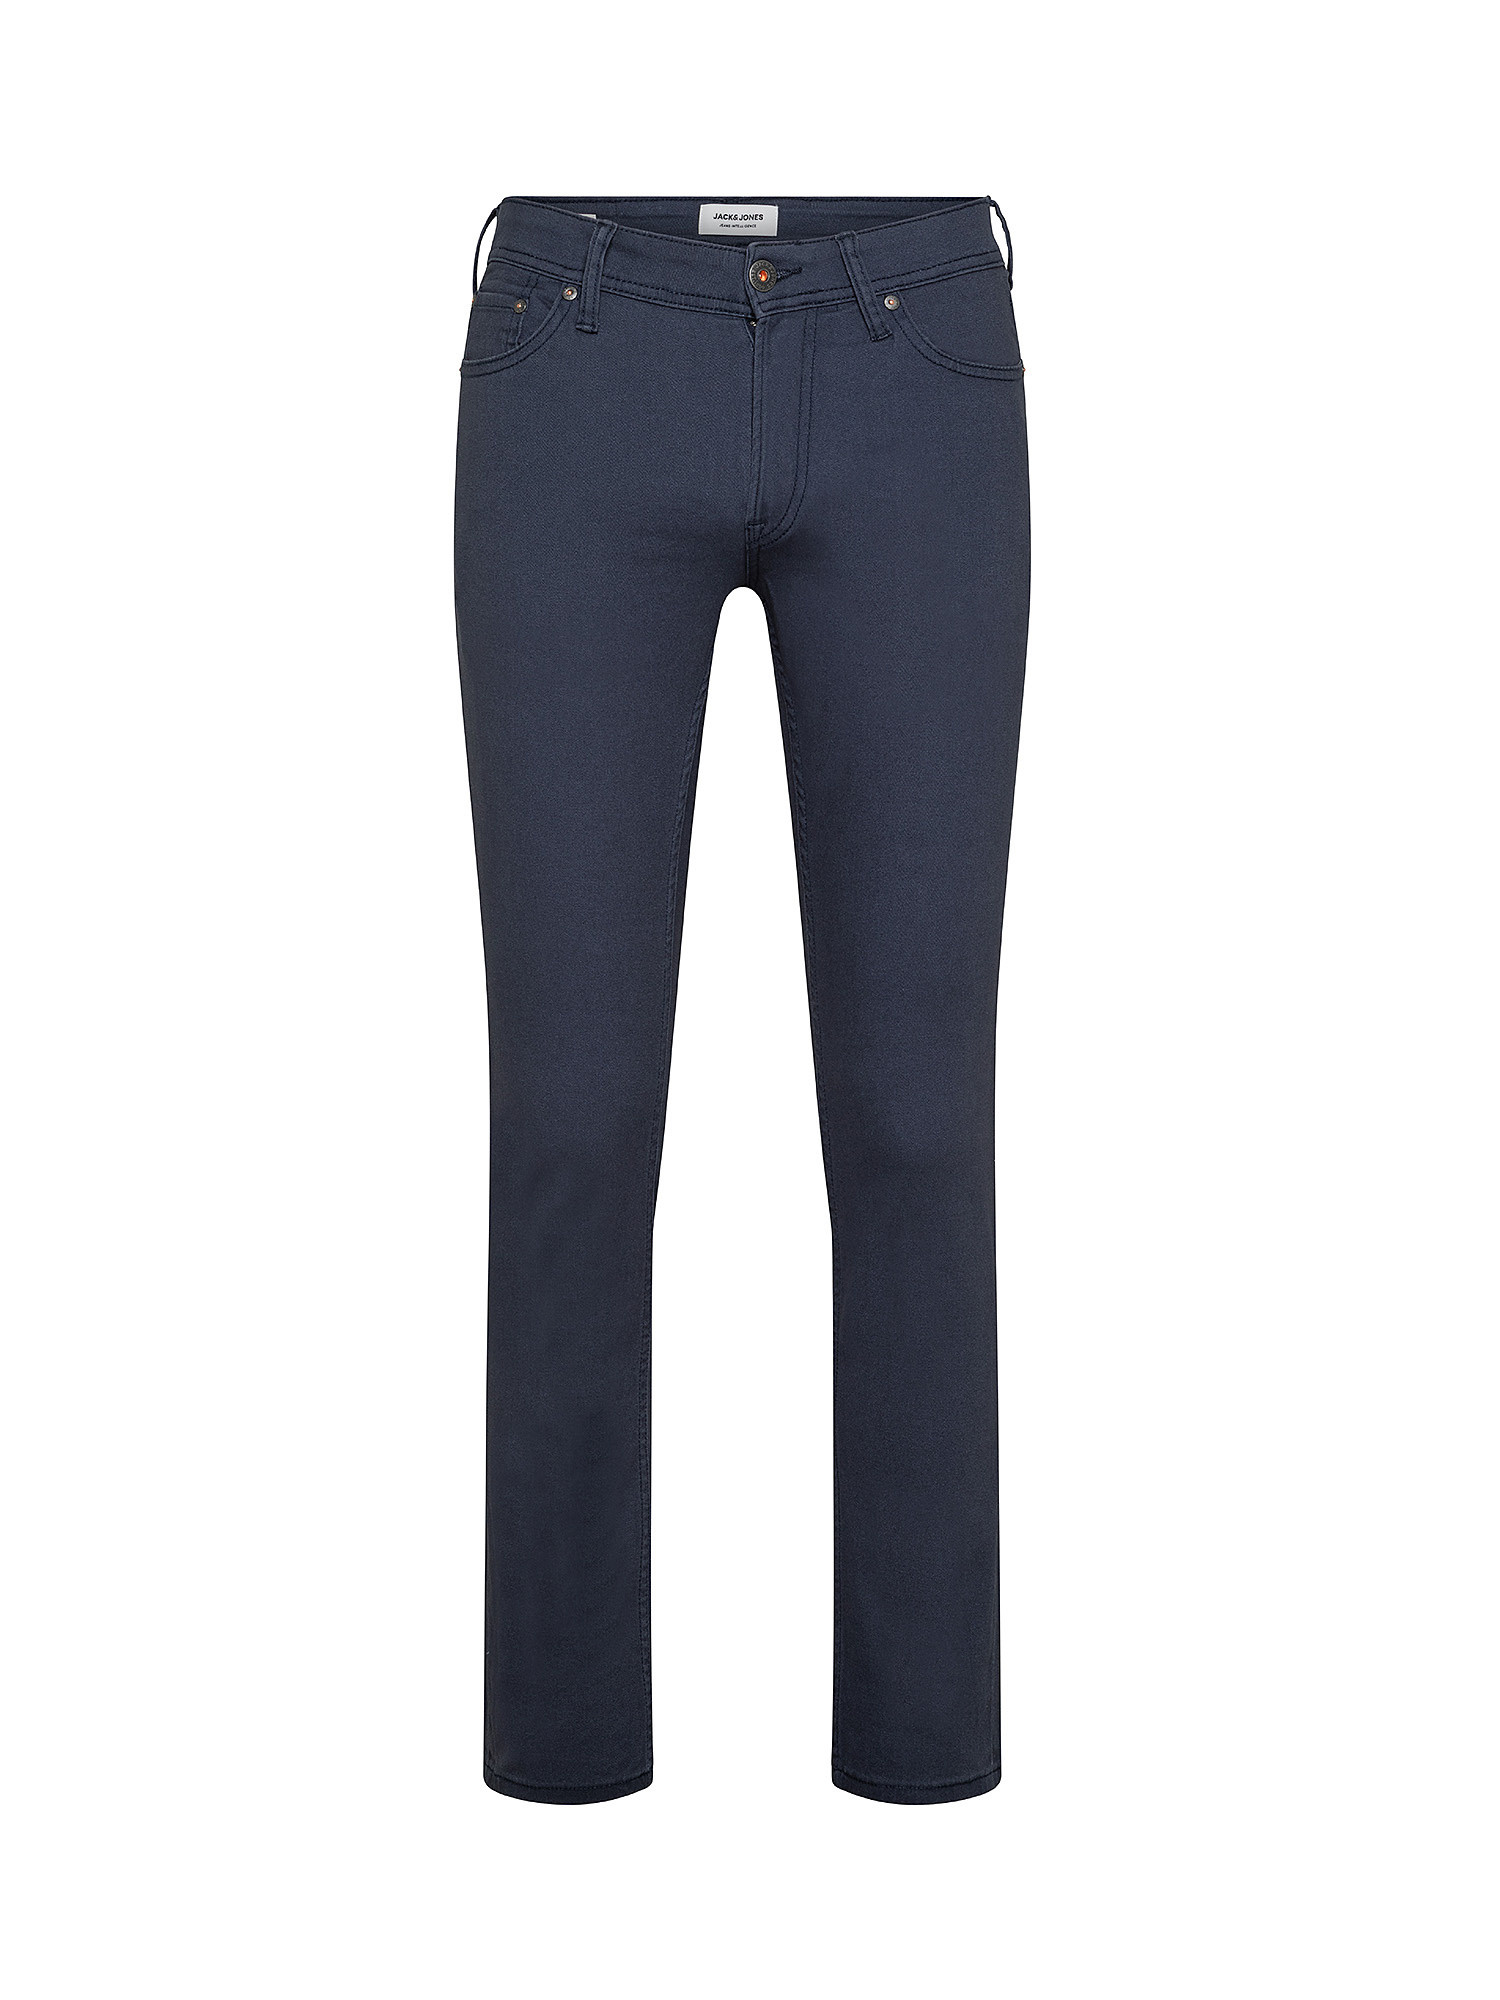 Pantalone, Blu scuro, large image number 0